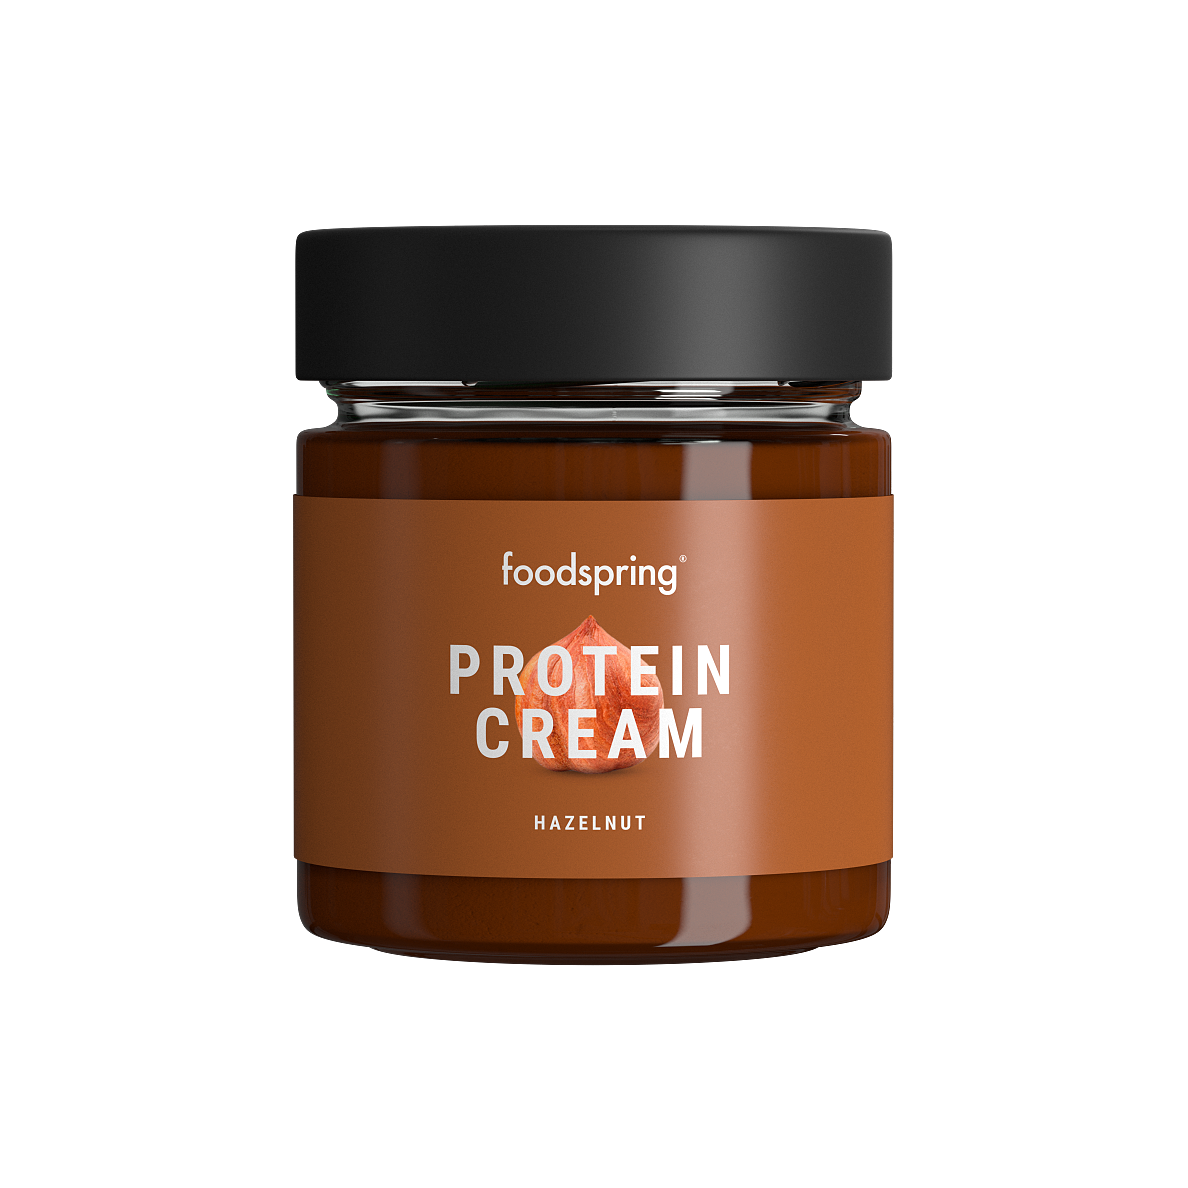 foodspring_Protein Cream_Hazelnut_EUR 5,99